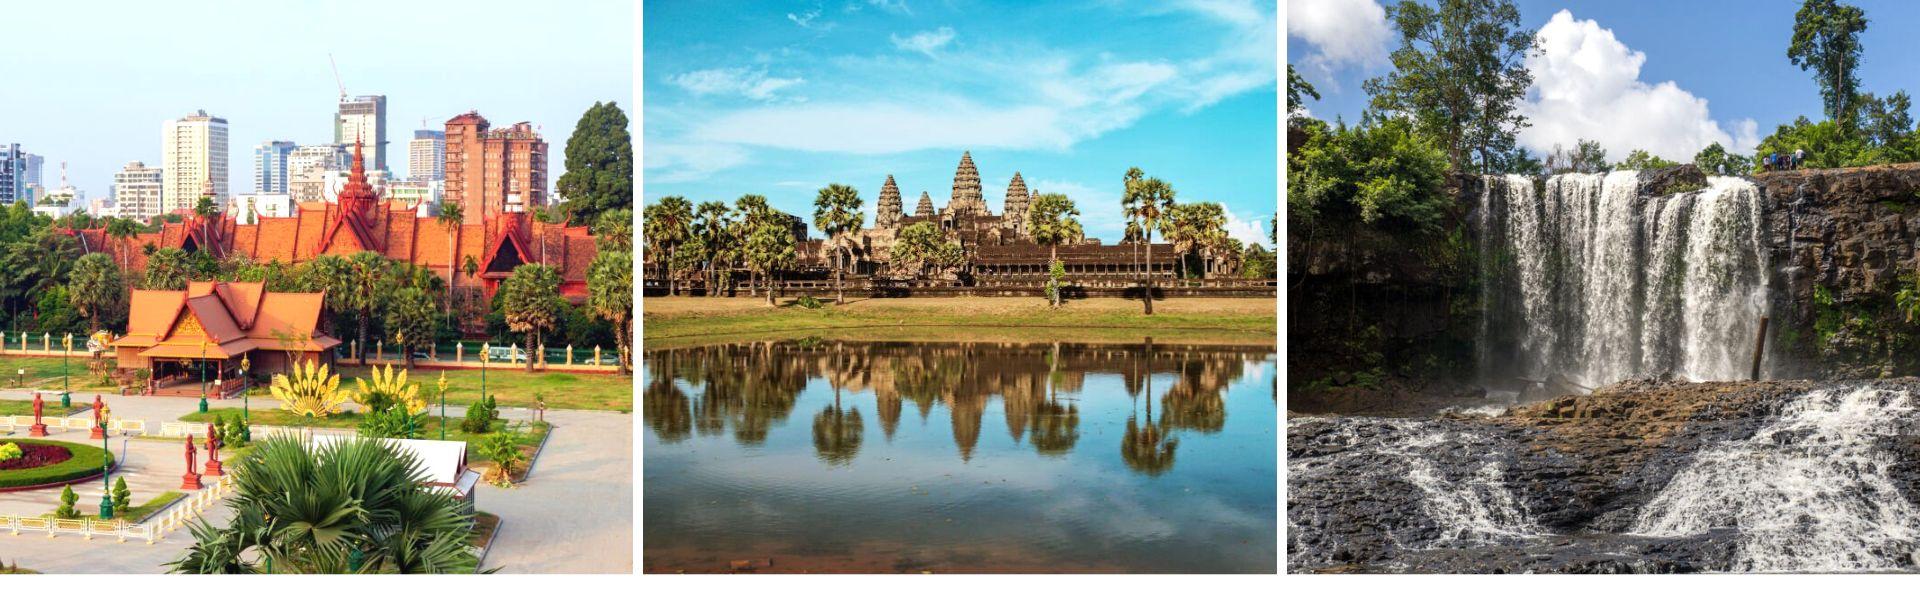 Viaggio autentico in Cambogia 2 settimane